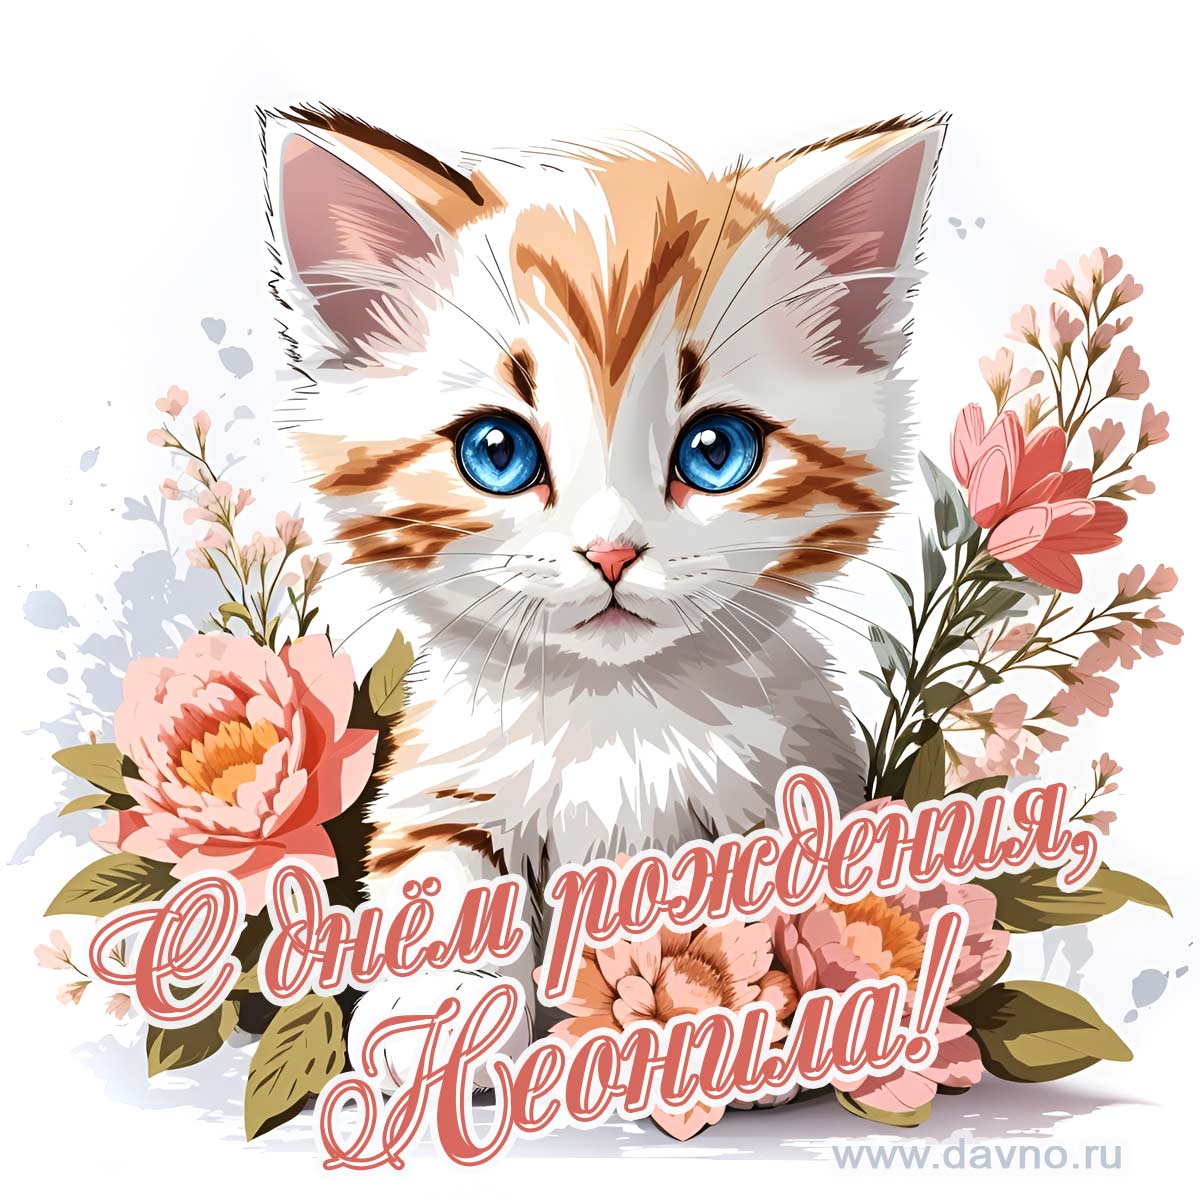 Новая рисованная поздравительная открытка для Неонилы с котёнком